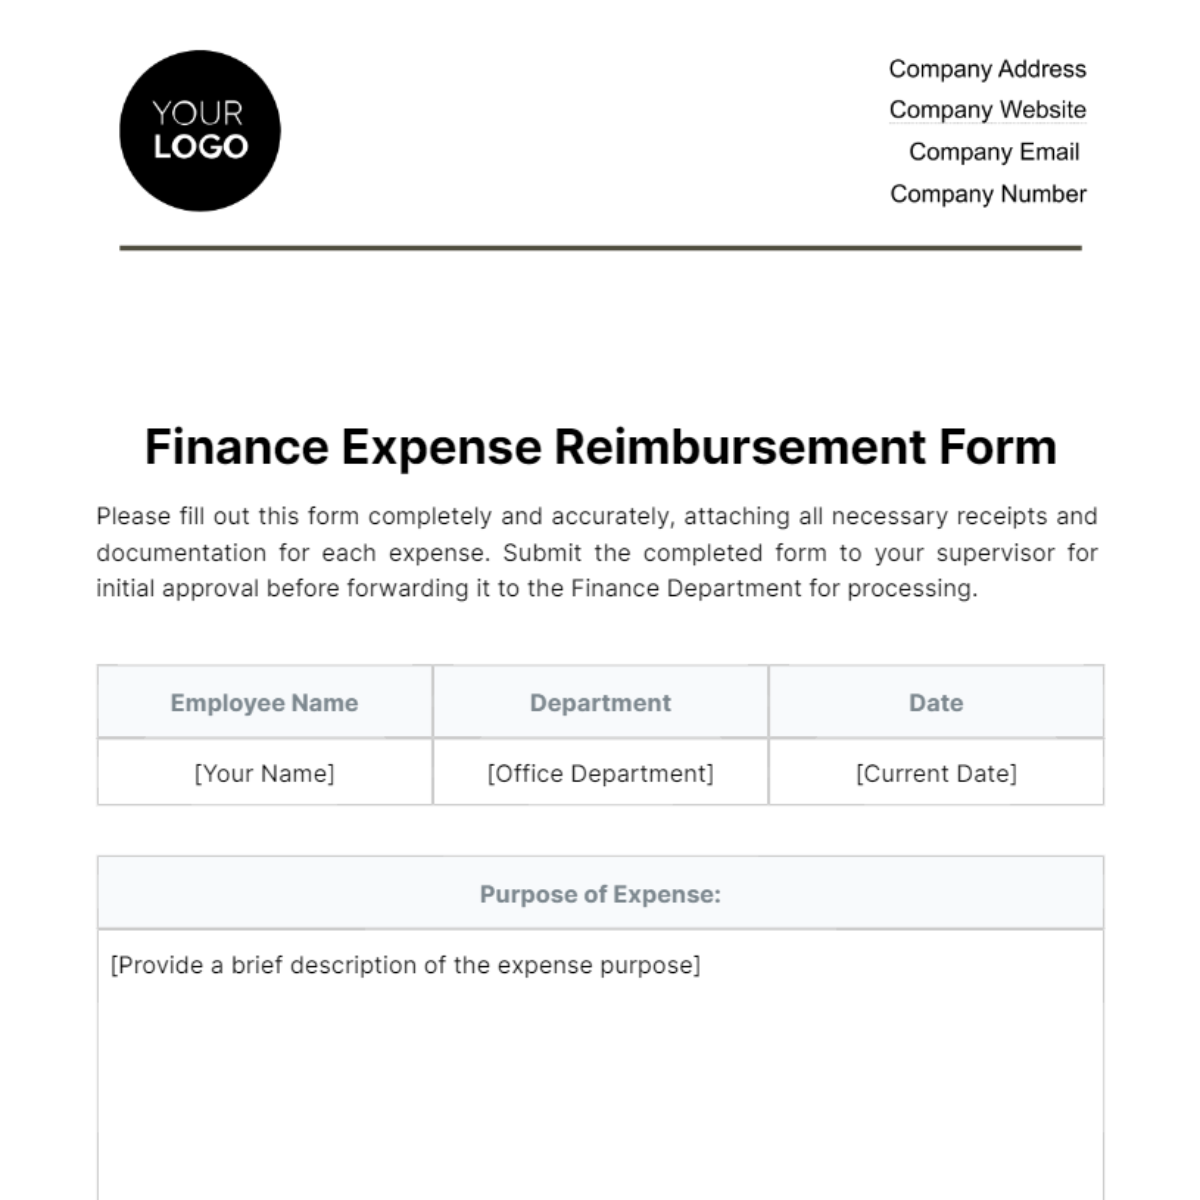 Finance Expense Reimbursement Form Template